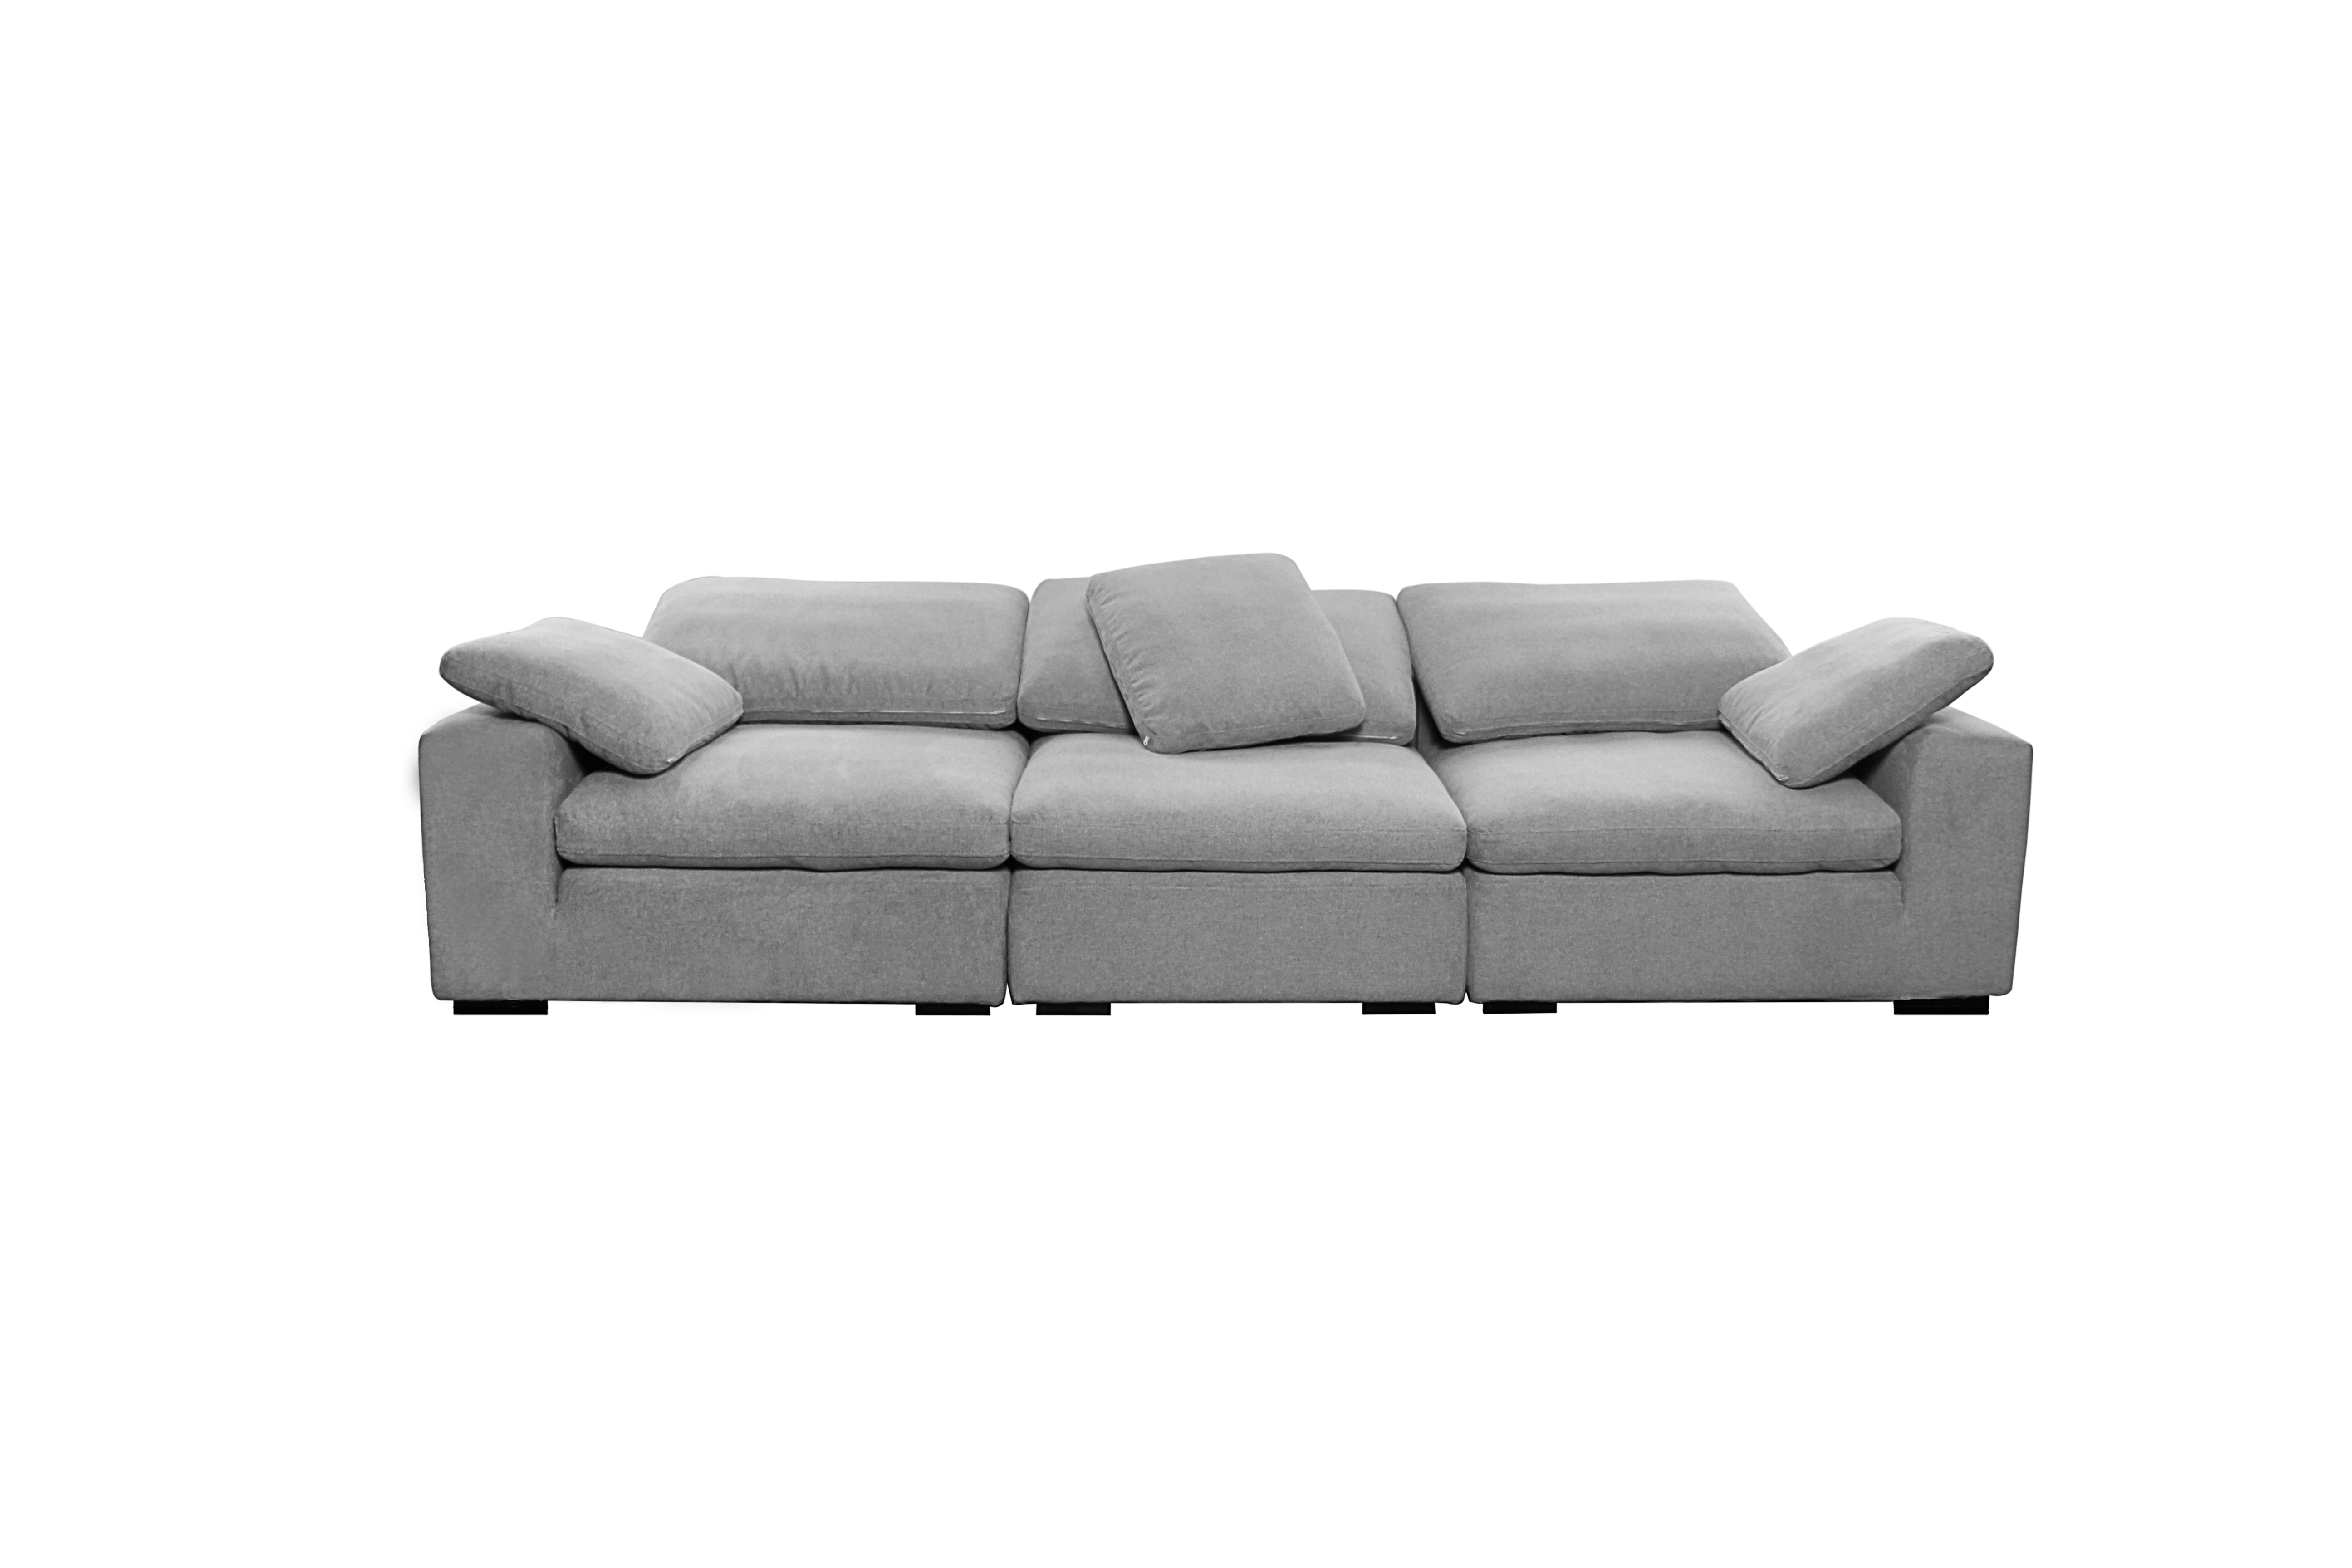 Model 8107  Italian design stationary sofa velvet couch